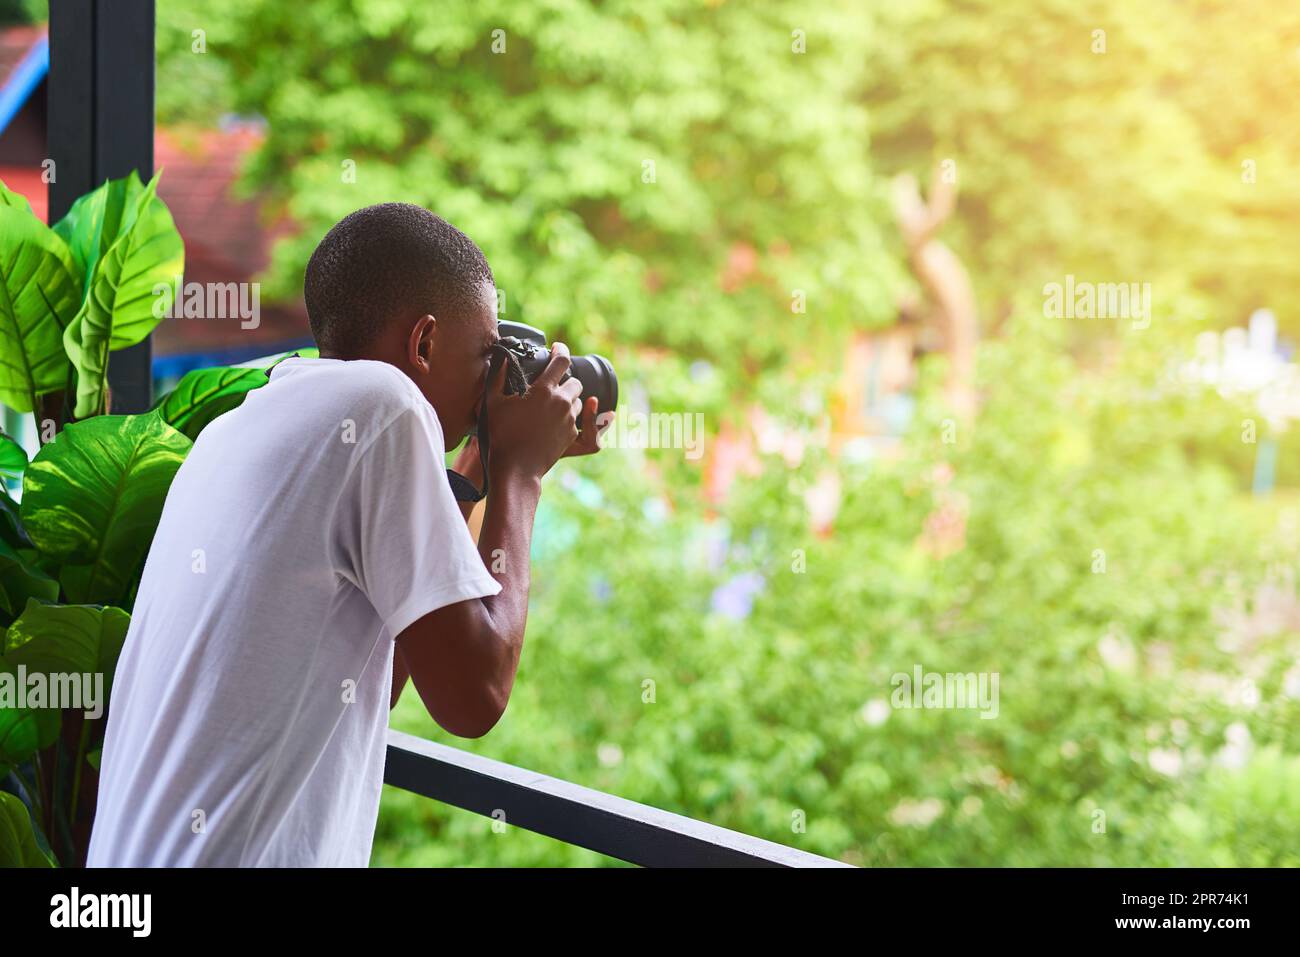 Il adore photographier des personnes depuis son balcon. Photo d'un touriste non identifiable prenant une photo de son balcon. Banque D'Images